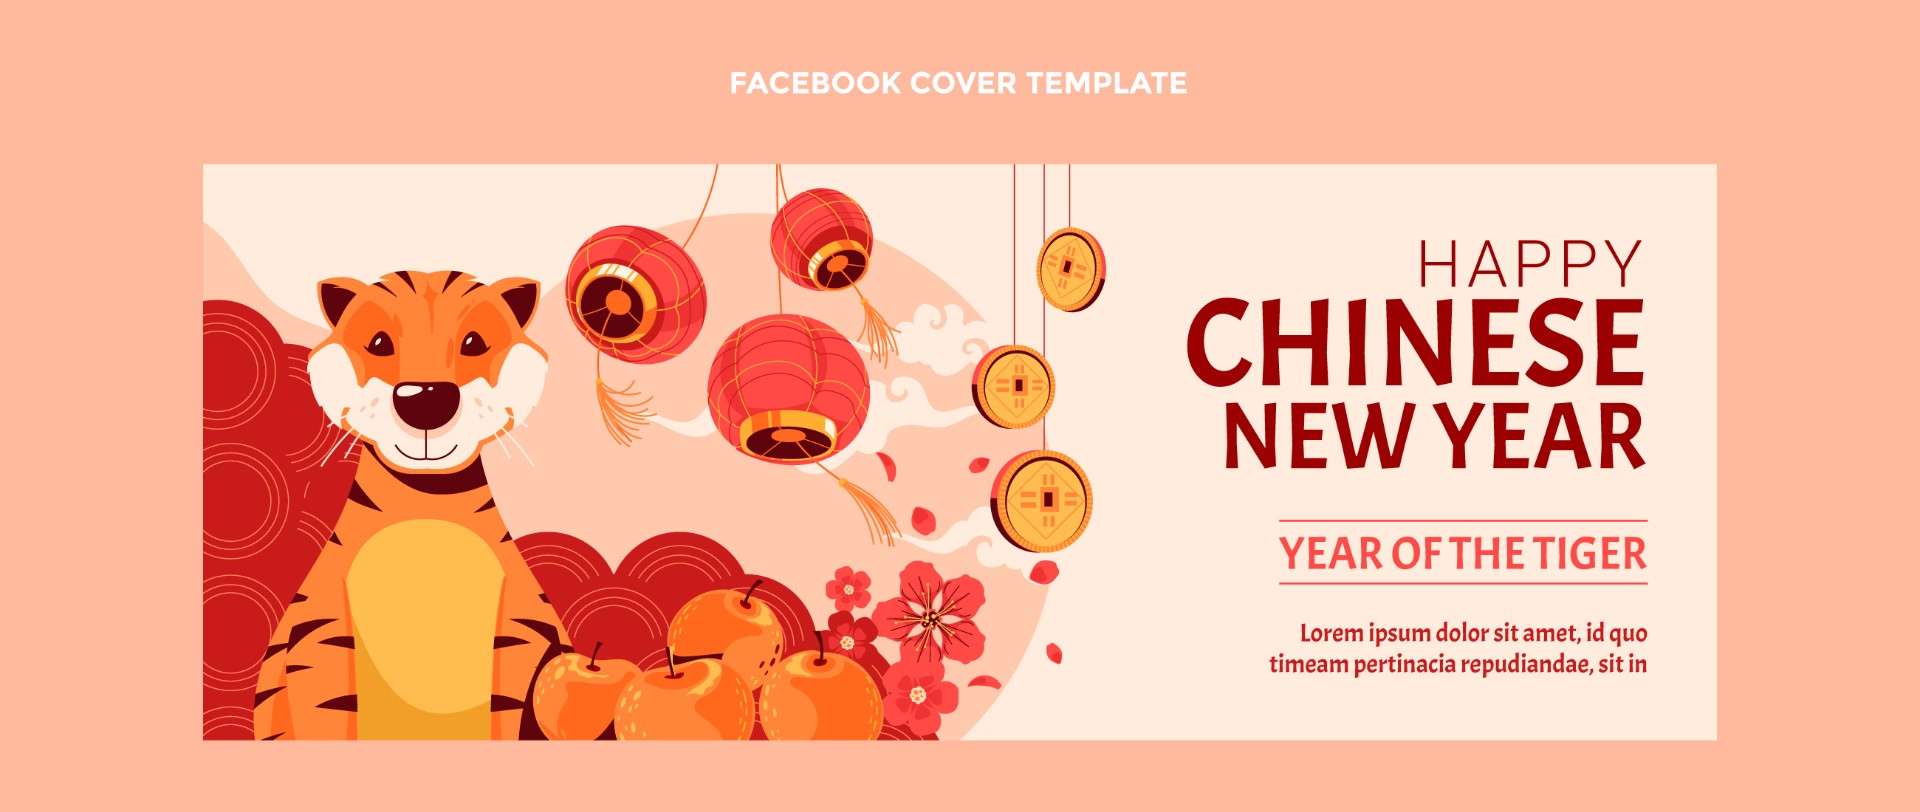 中国新年社交媒体封面模板0